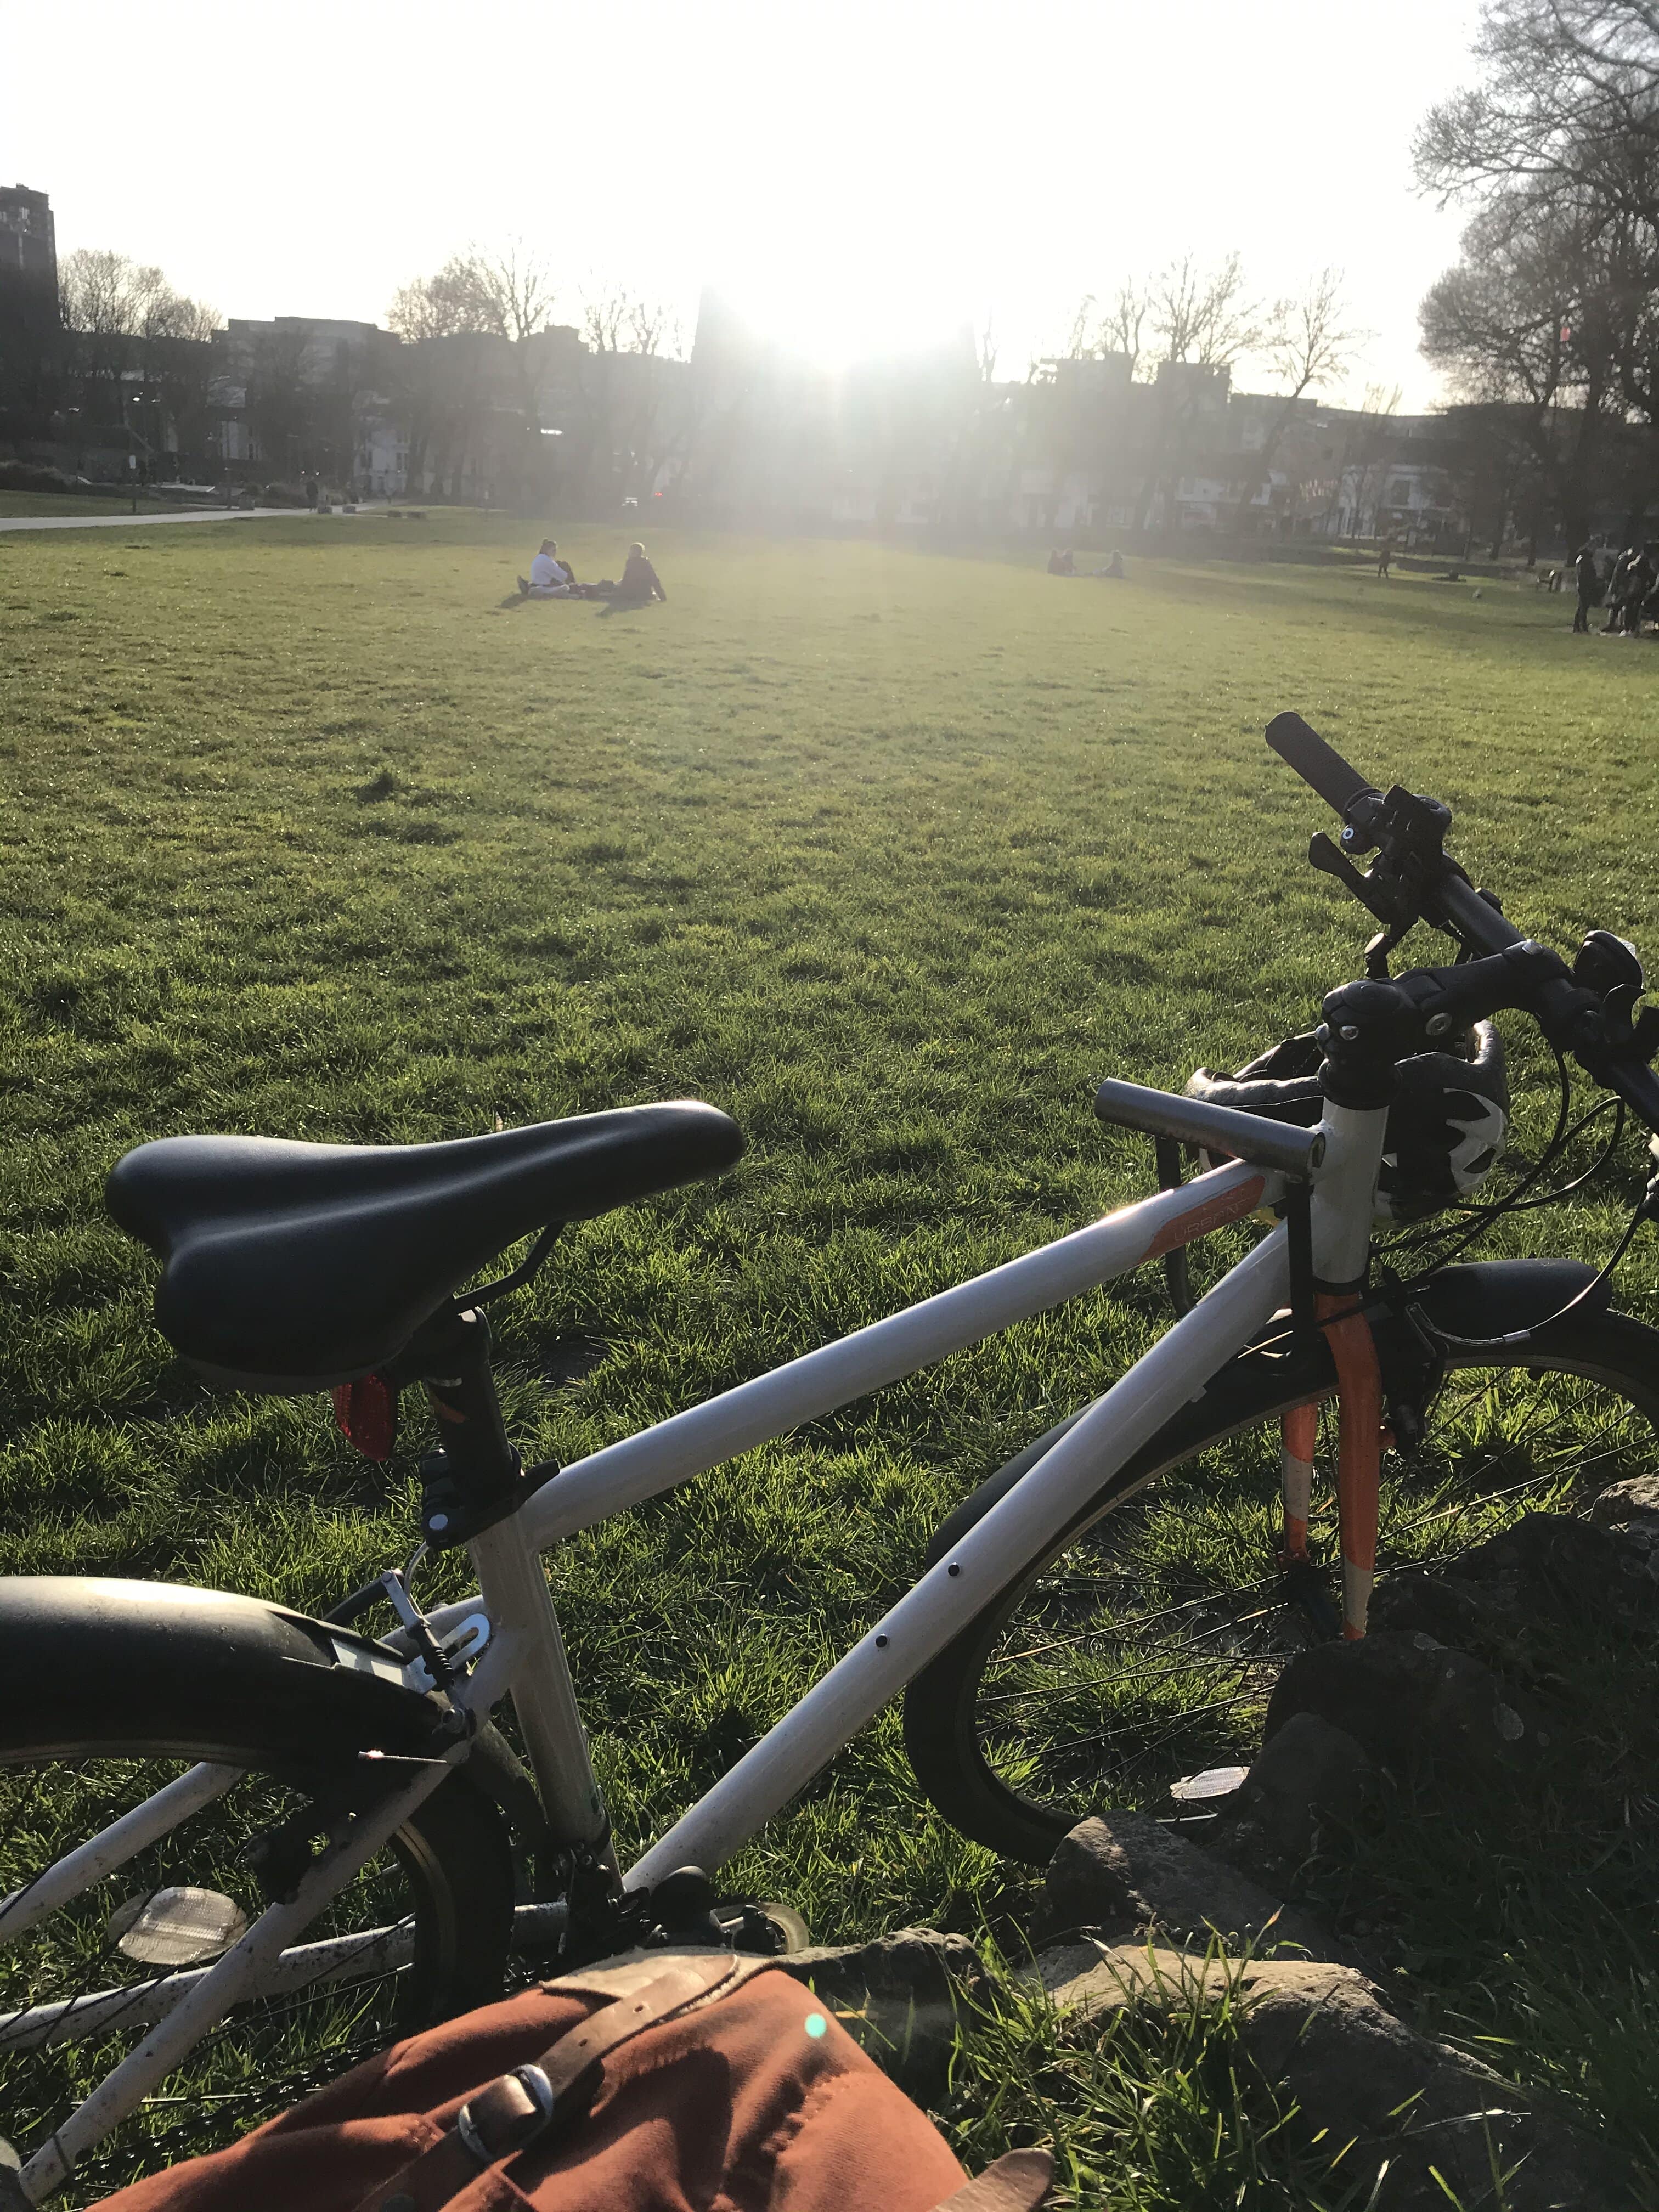 viking urban 2019 hybrid bike